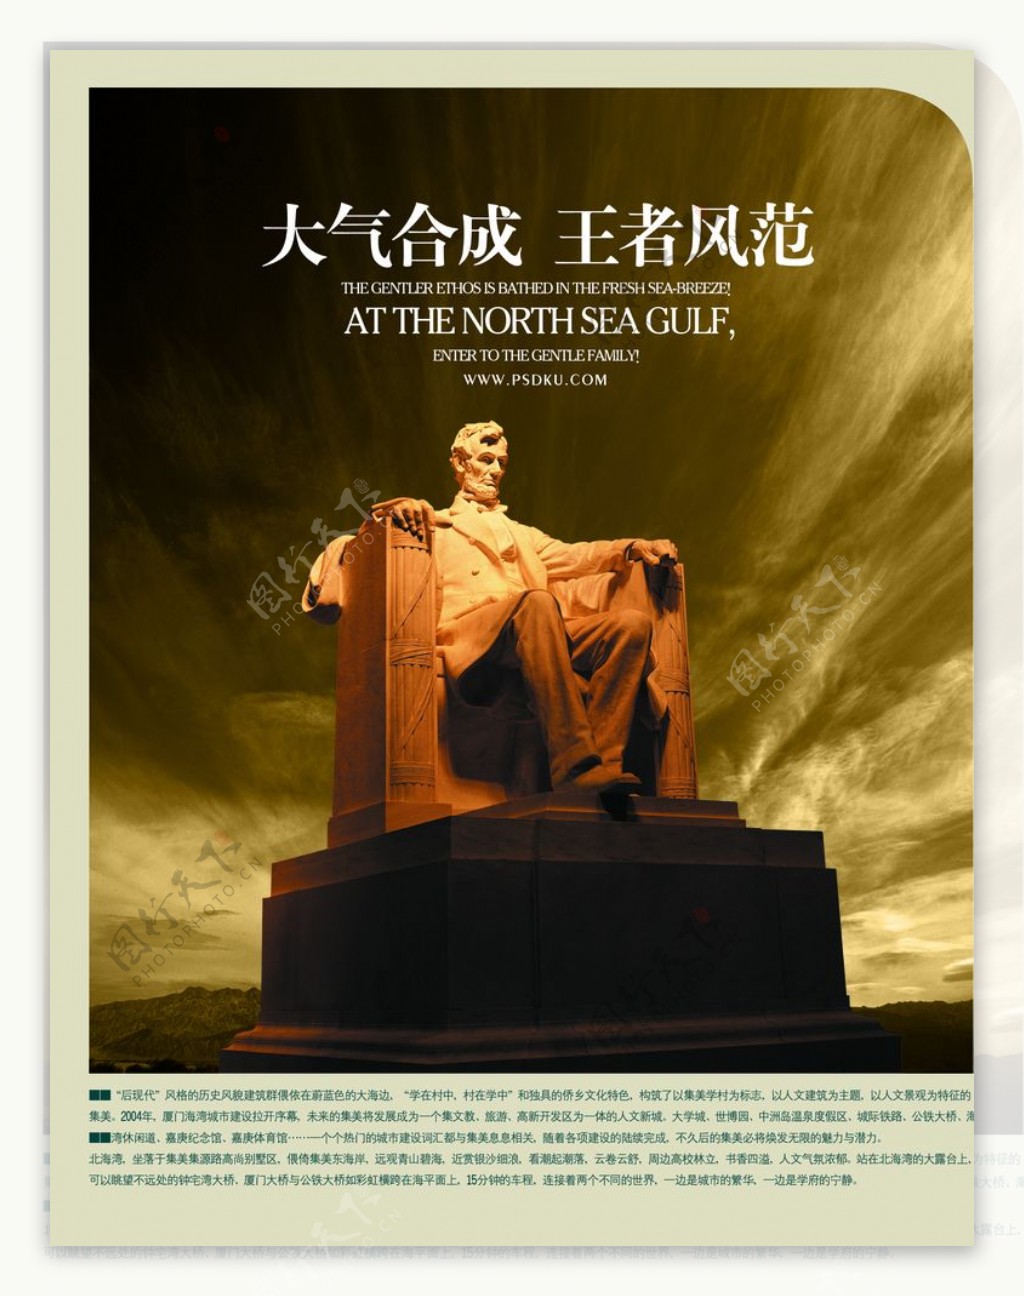 有气势王者风范雕塑文案宣传海报